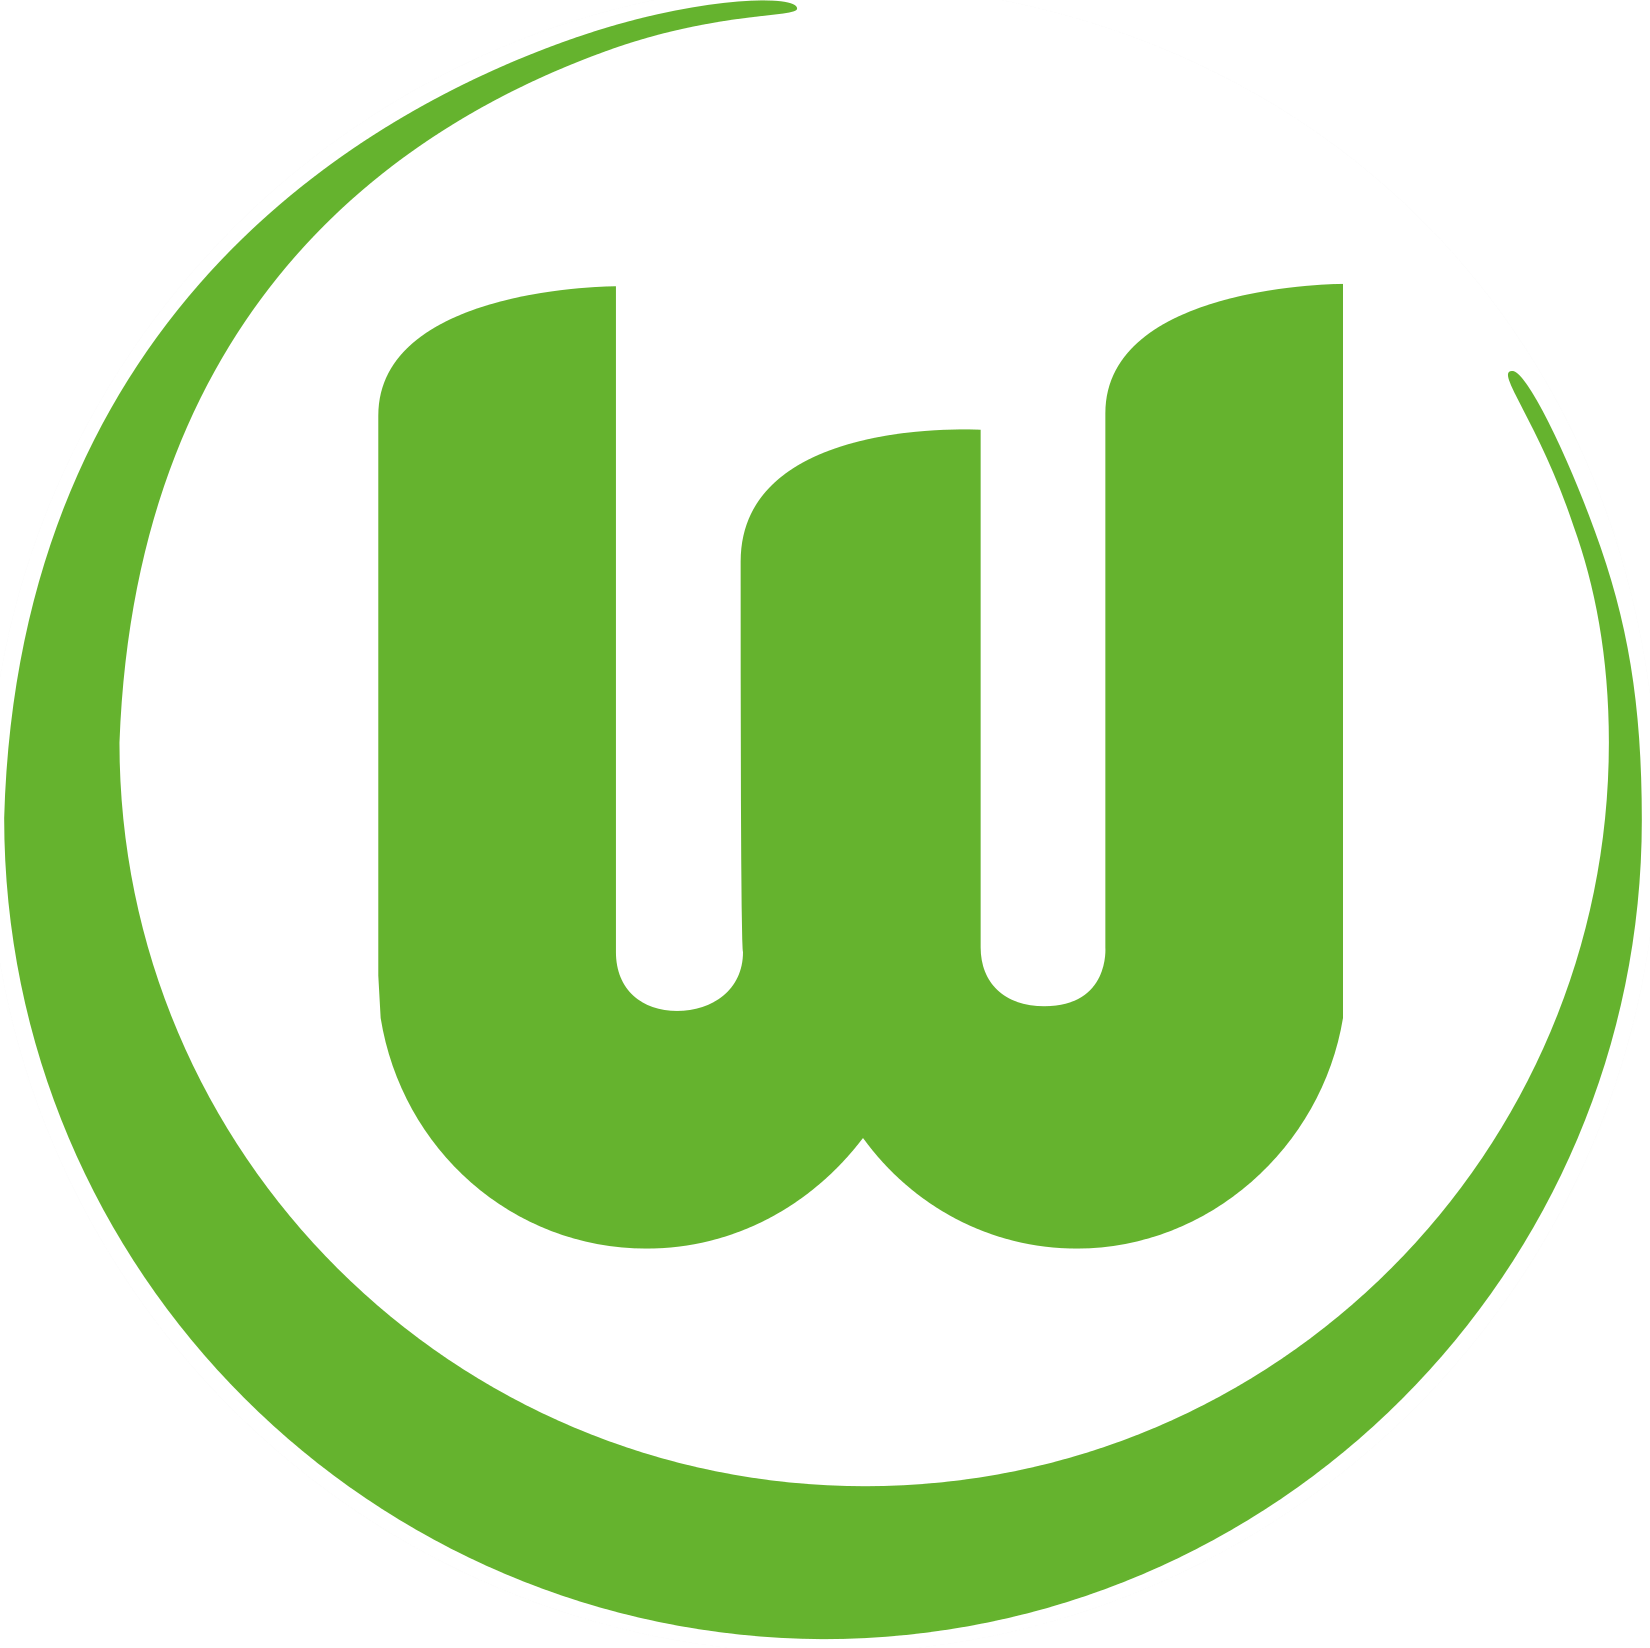 Wappen VfL Wolfsburg 1945 Breitenfußball  42382